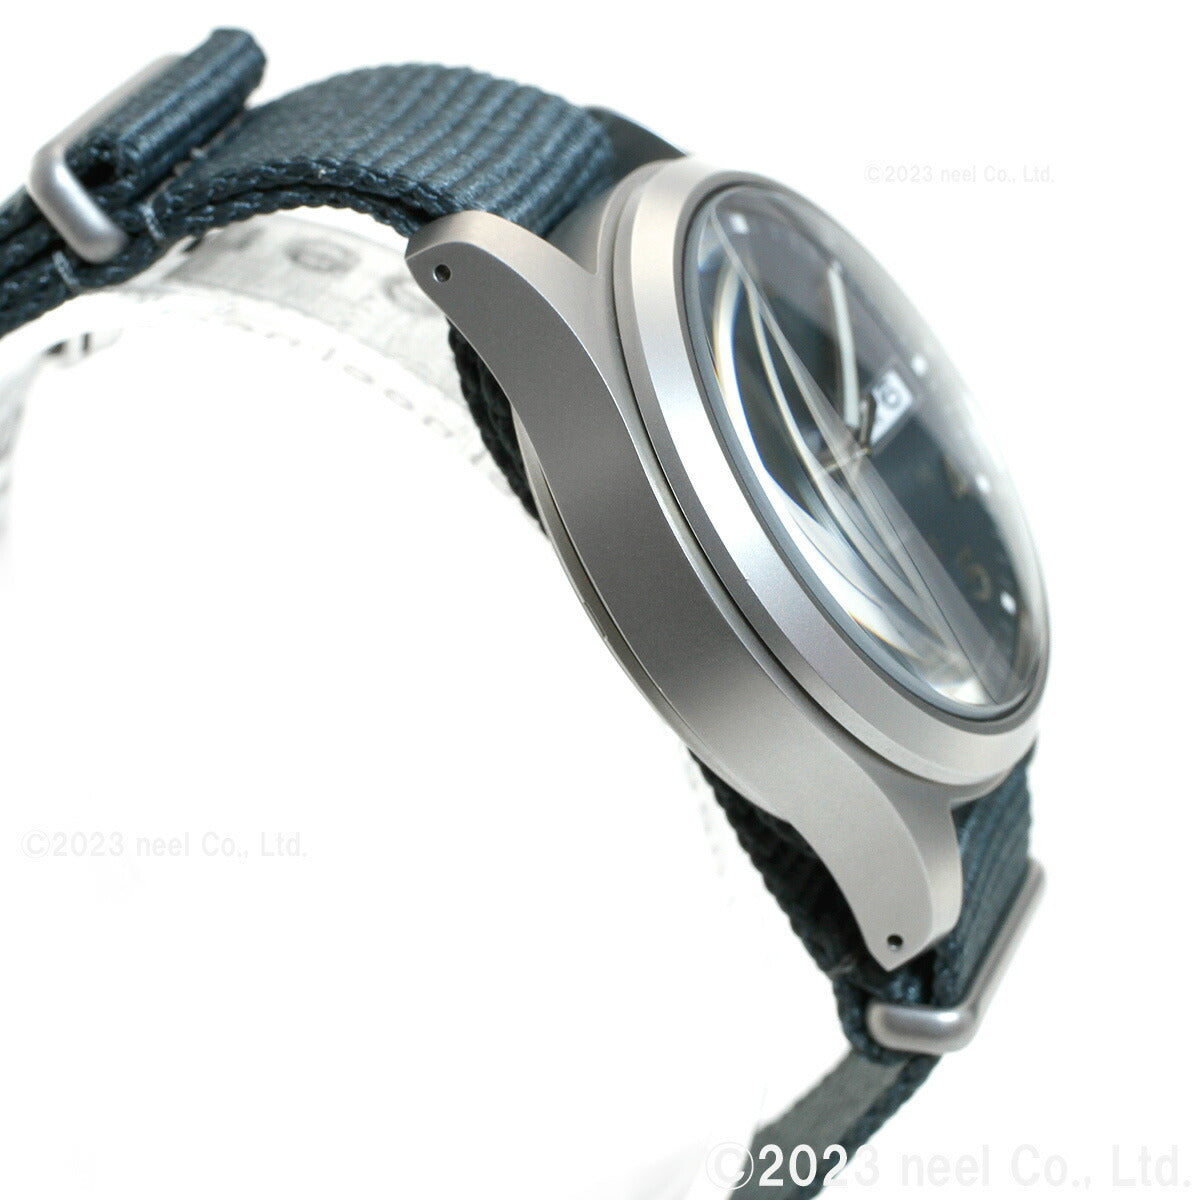 セイコー5 スポーツ SEIKO 5 SPORTS 自動巻き メカニカル 流通限定モデル 腕時計 メンズ セイコーファイブ スポーツ Sports SBSA115